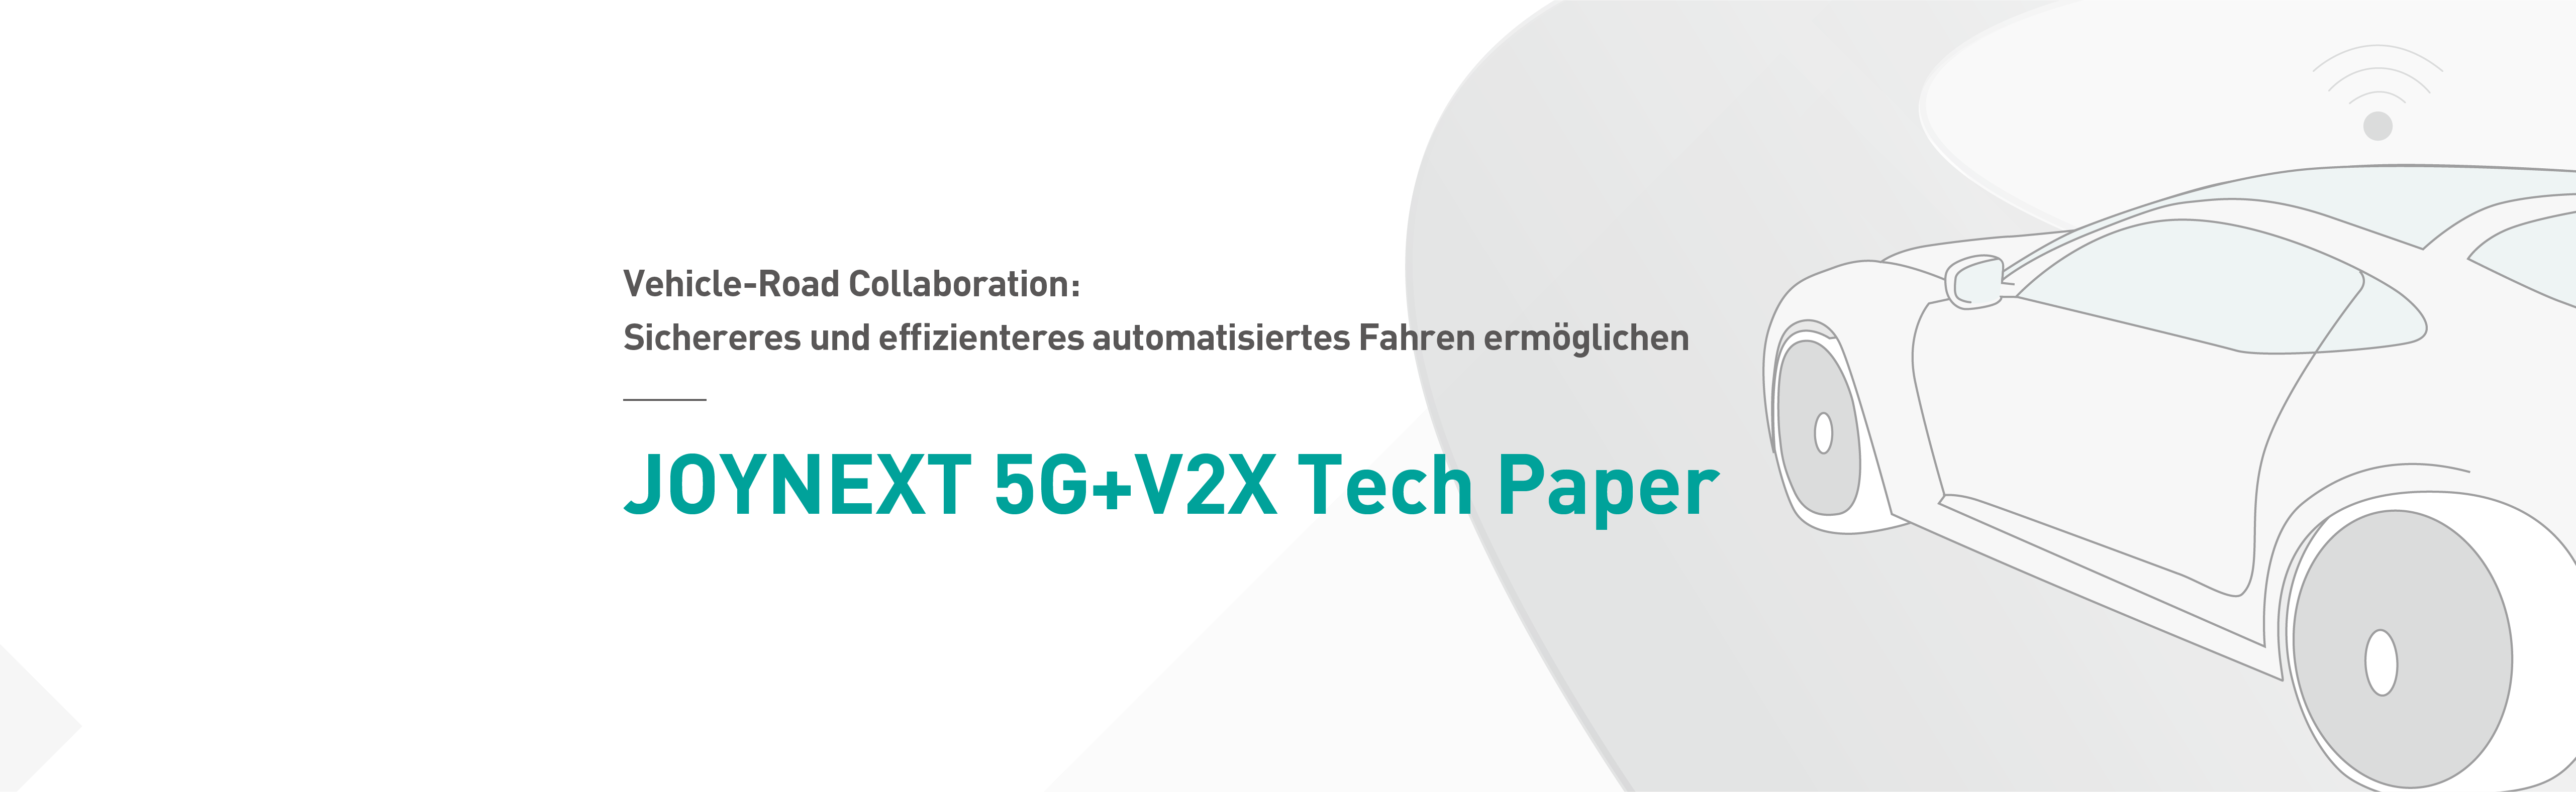 JOYNEXT veröffentlicht das Tech Paper zur 5G+V2X Technologie